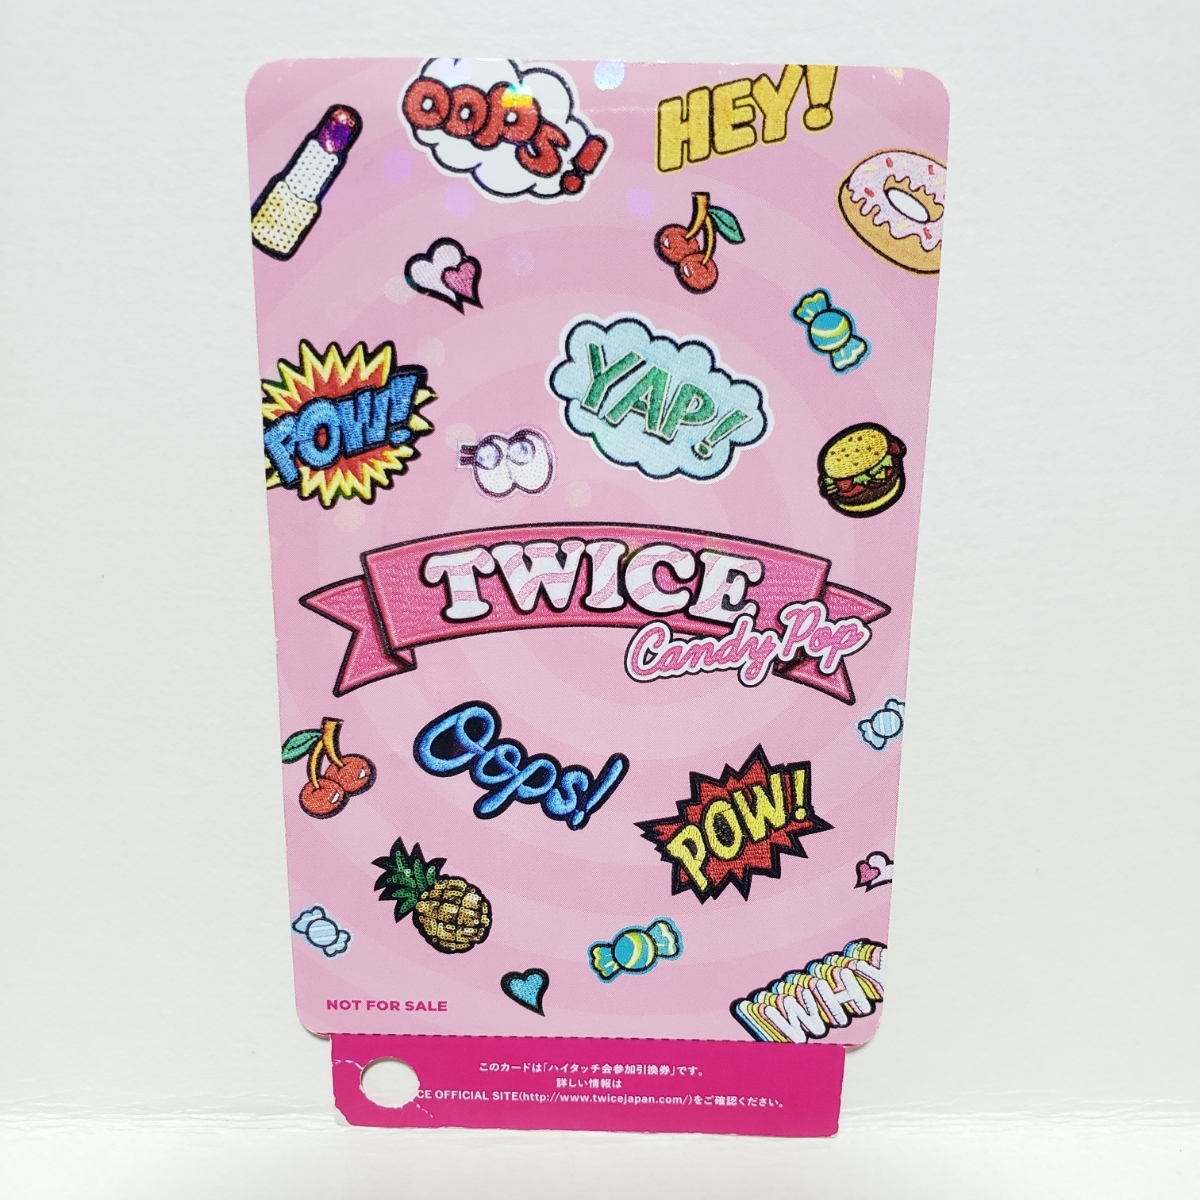 【超貴重 】TWICE Candy Pop ハイタッチ券(使用済み) ダヒョン DAHYUN